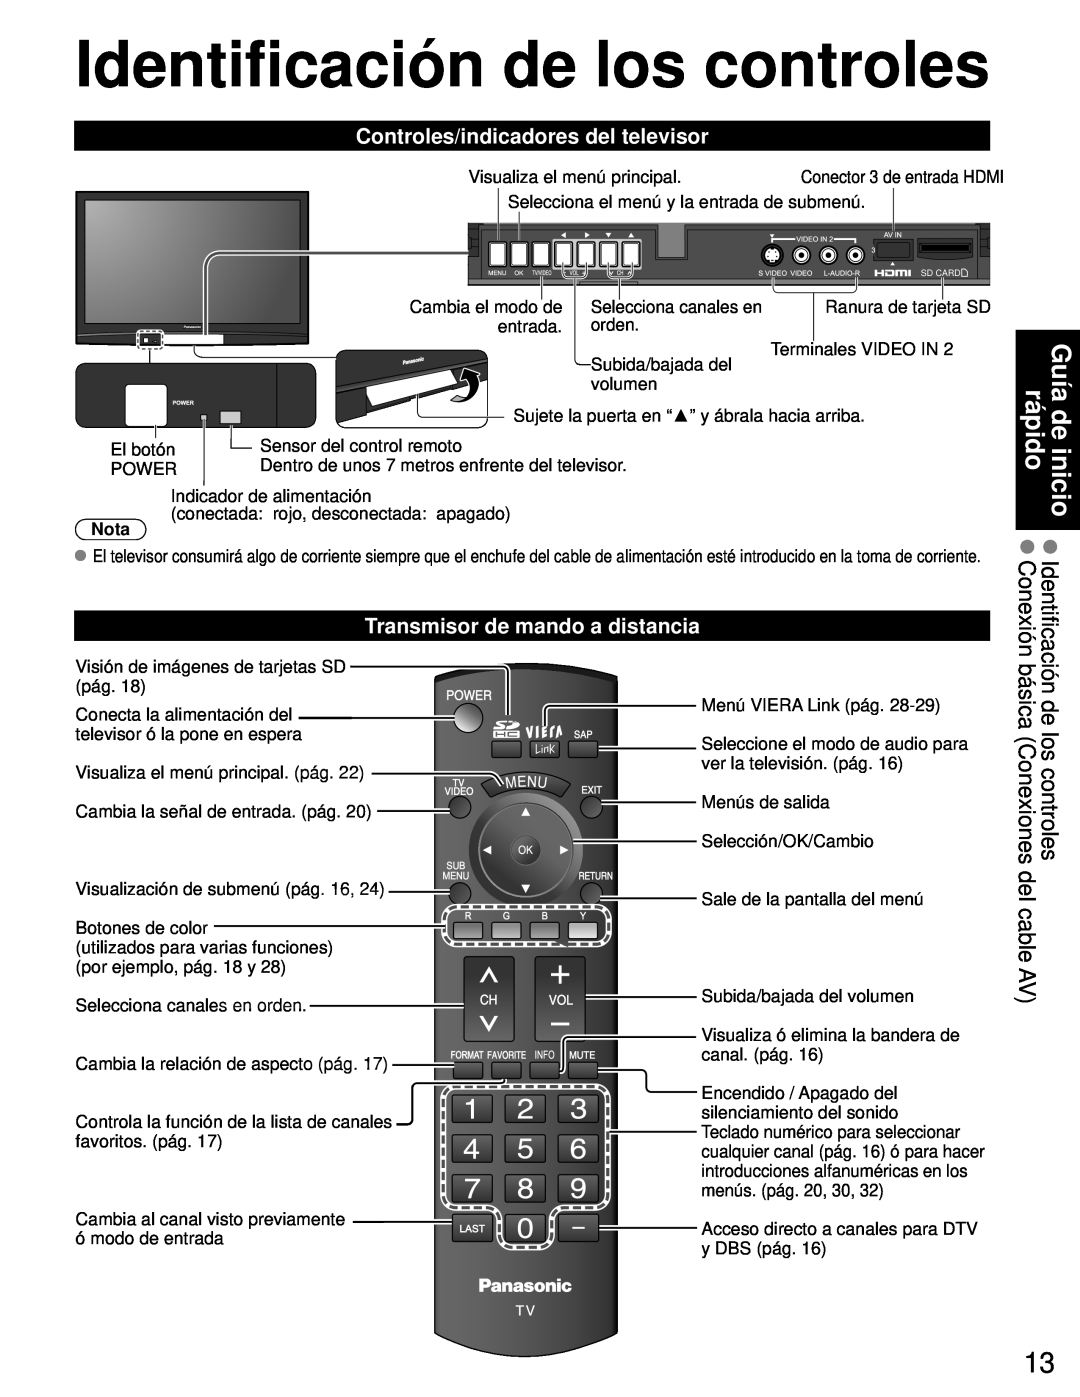 Panasonic TH-46PZ80U Identificación de los controles, Guía de inicio rápido, Controles/indicadores del televisor, Nota 